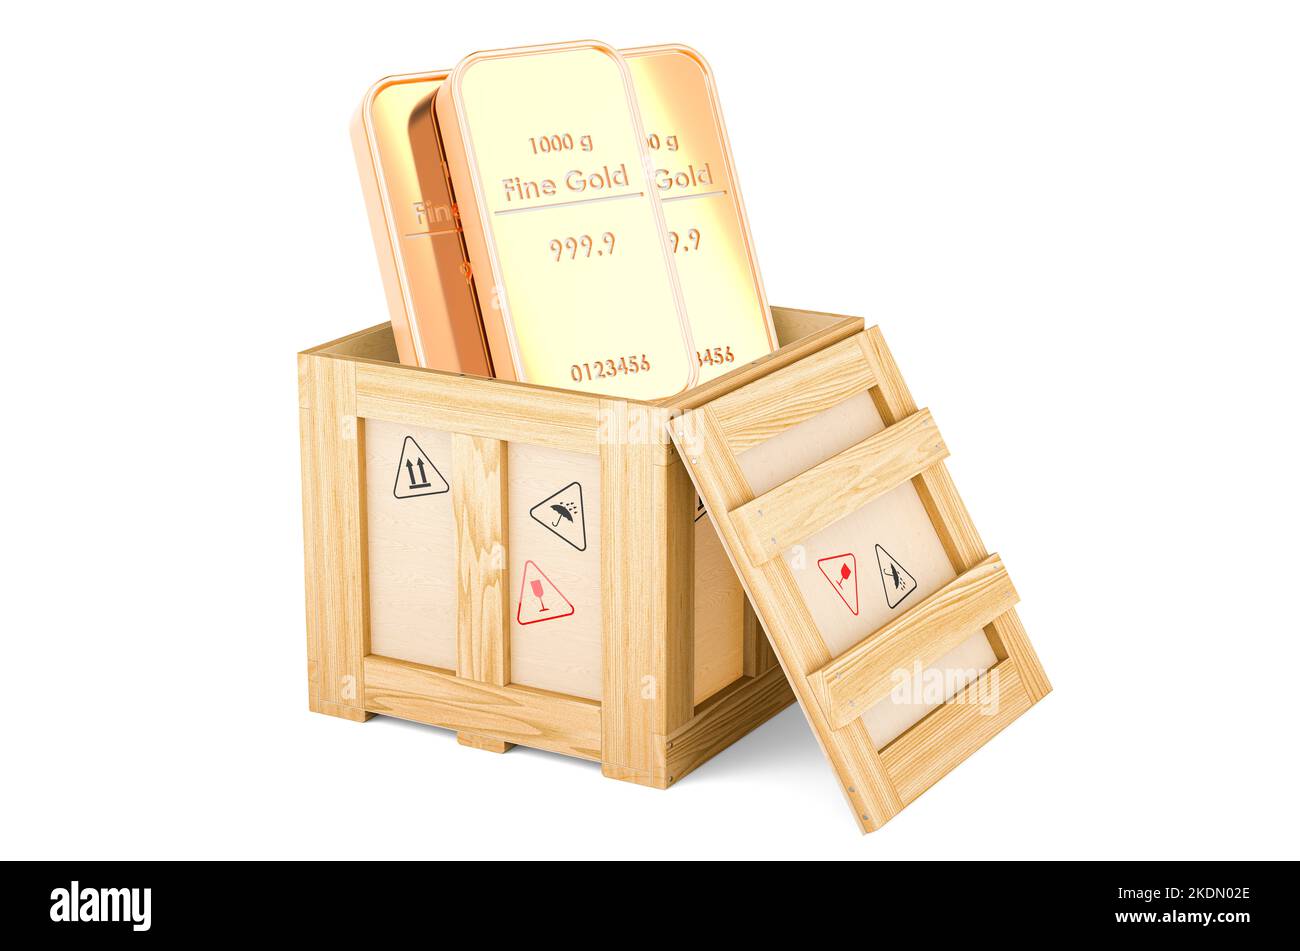 Barrette dorate all'interno della scatola di legno, concetto di consegna. 3D rendering isolato su sfondo bianco Foto Stock